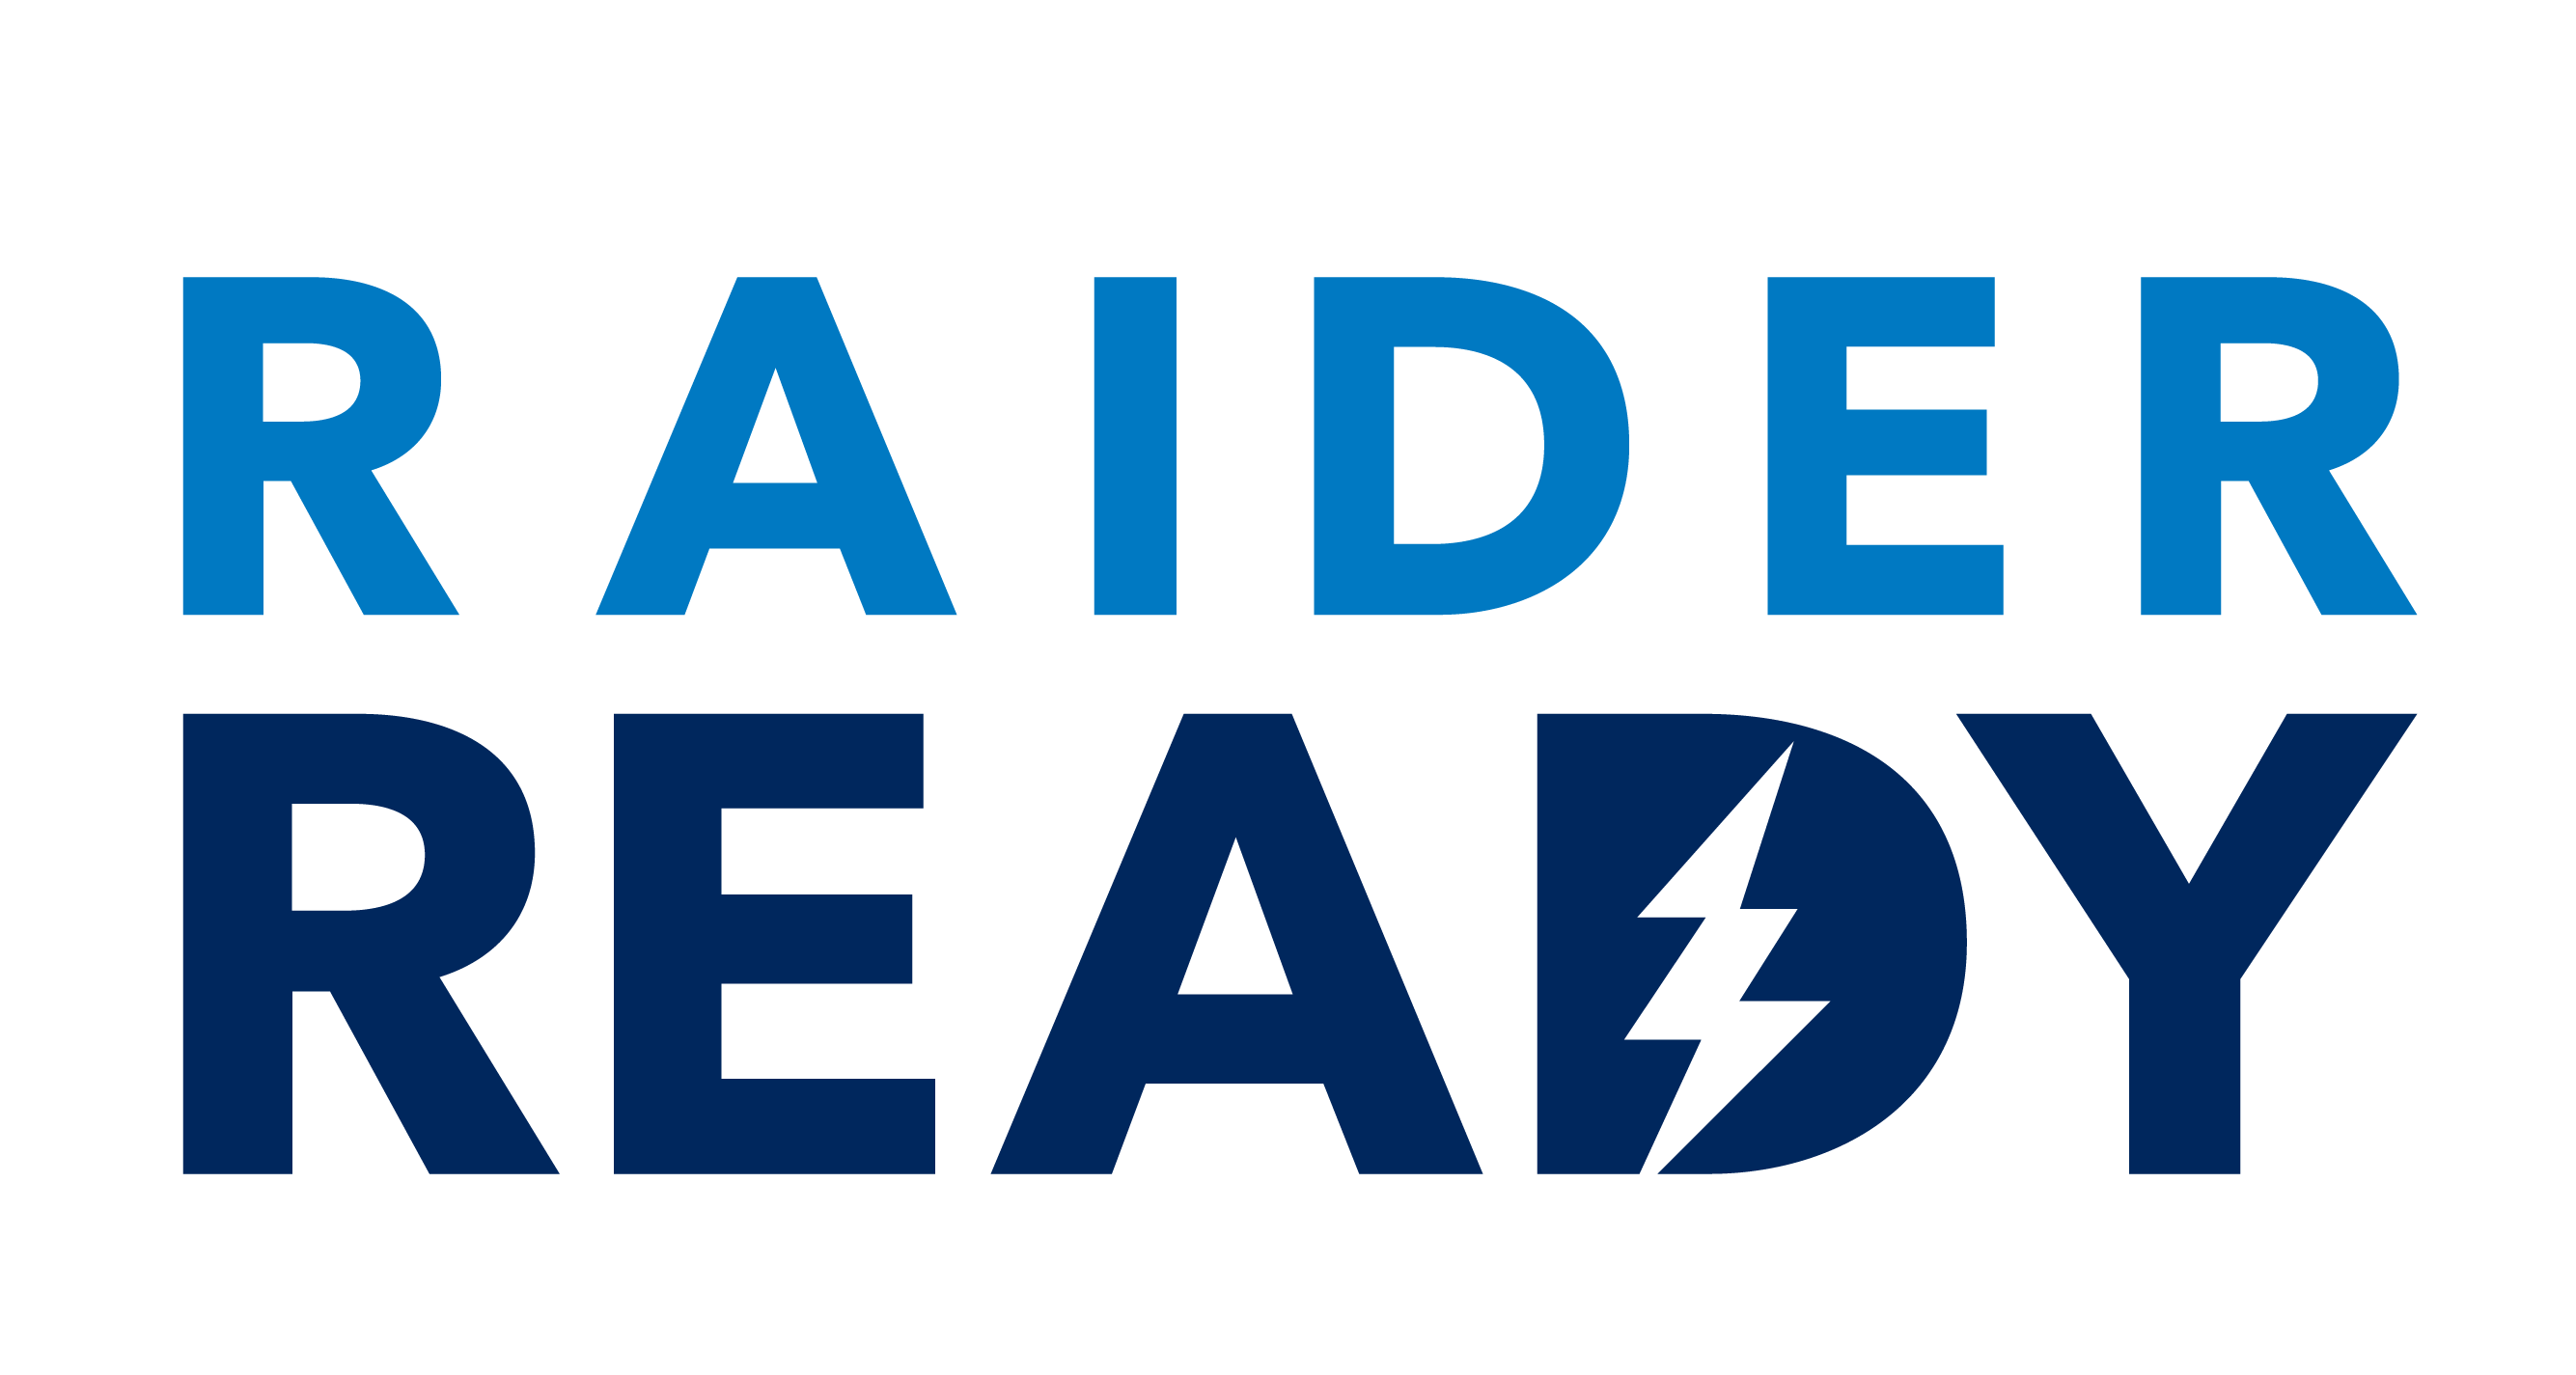 Raider Ready logo